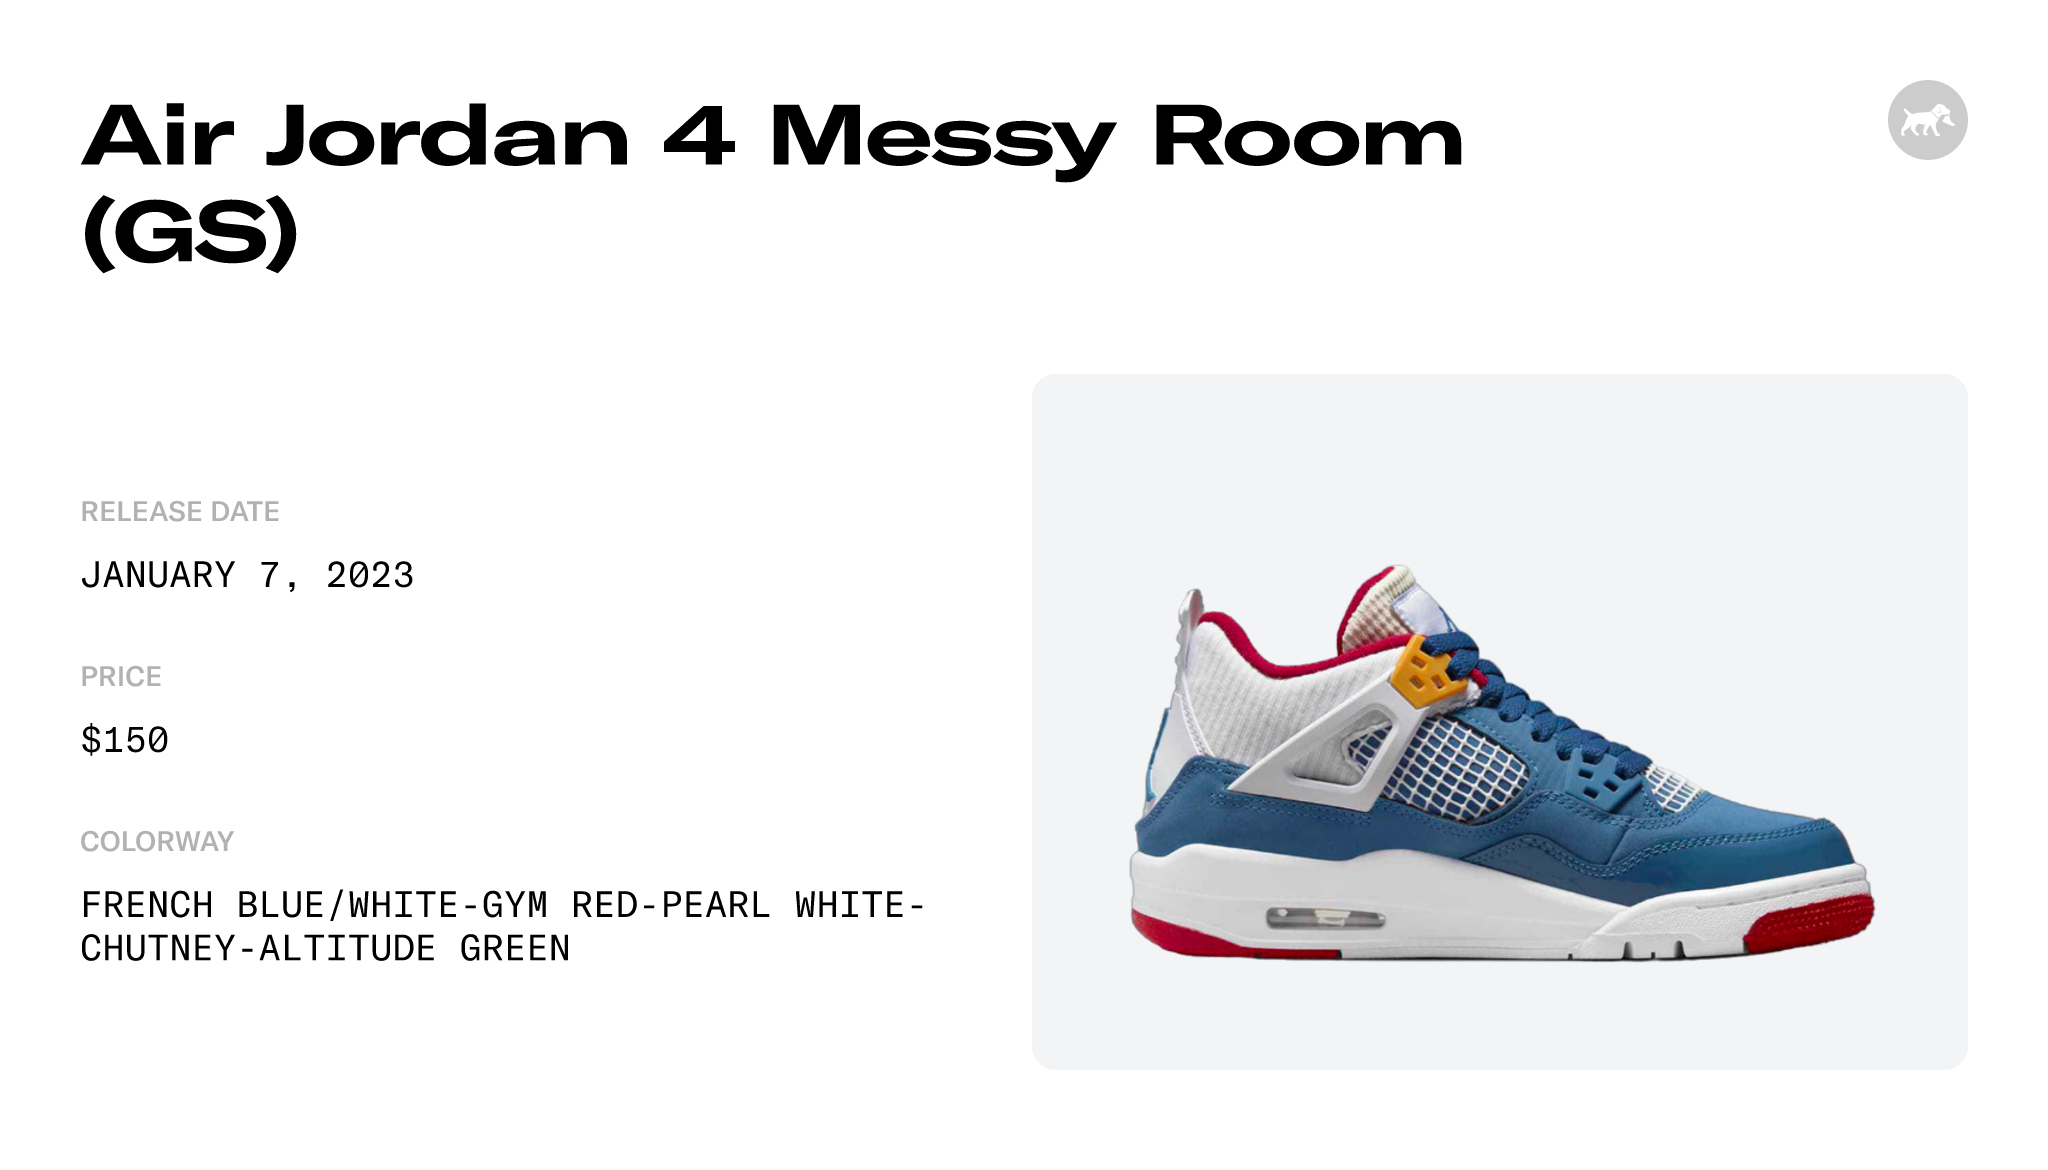 Air Jordan 4 GS Messy Room DR6952-400